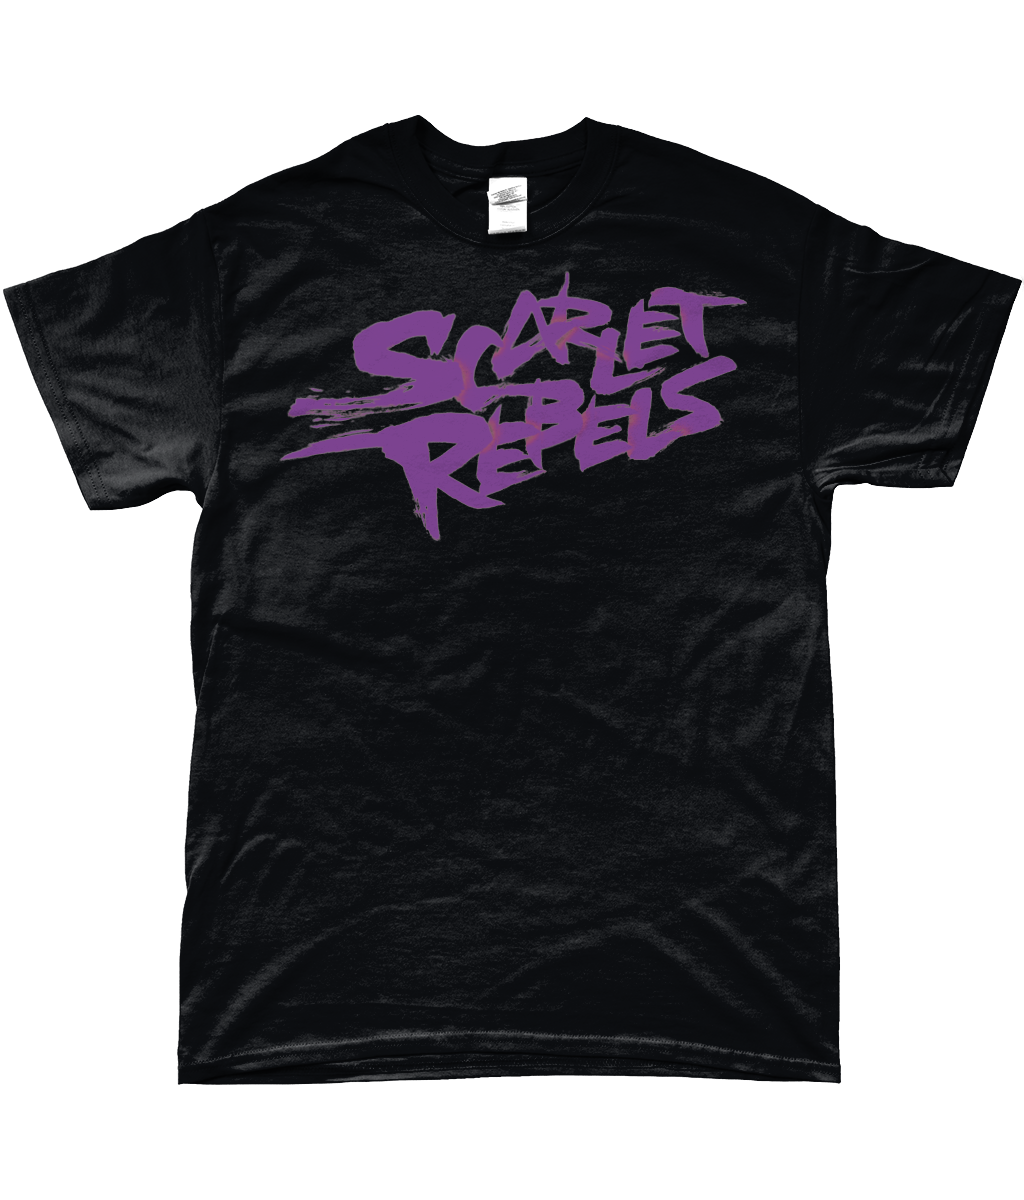 Scarlet Rebels Purple - Mens